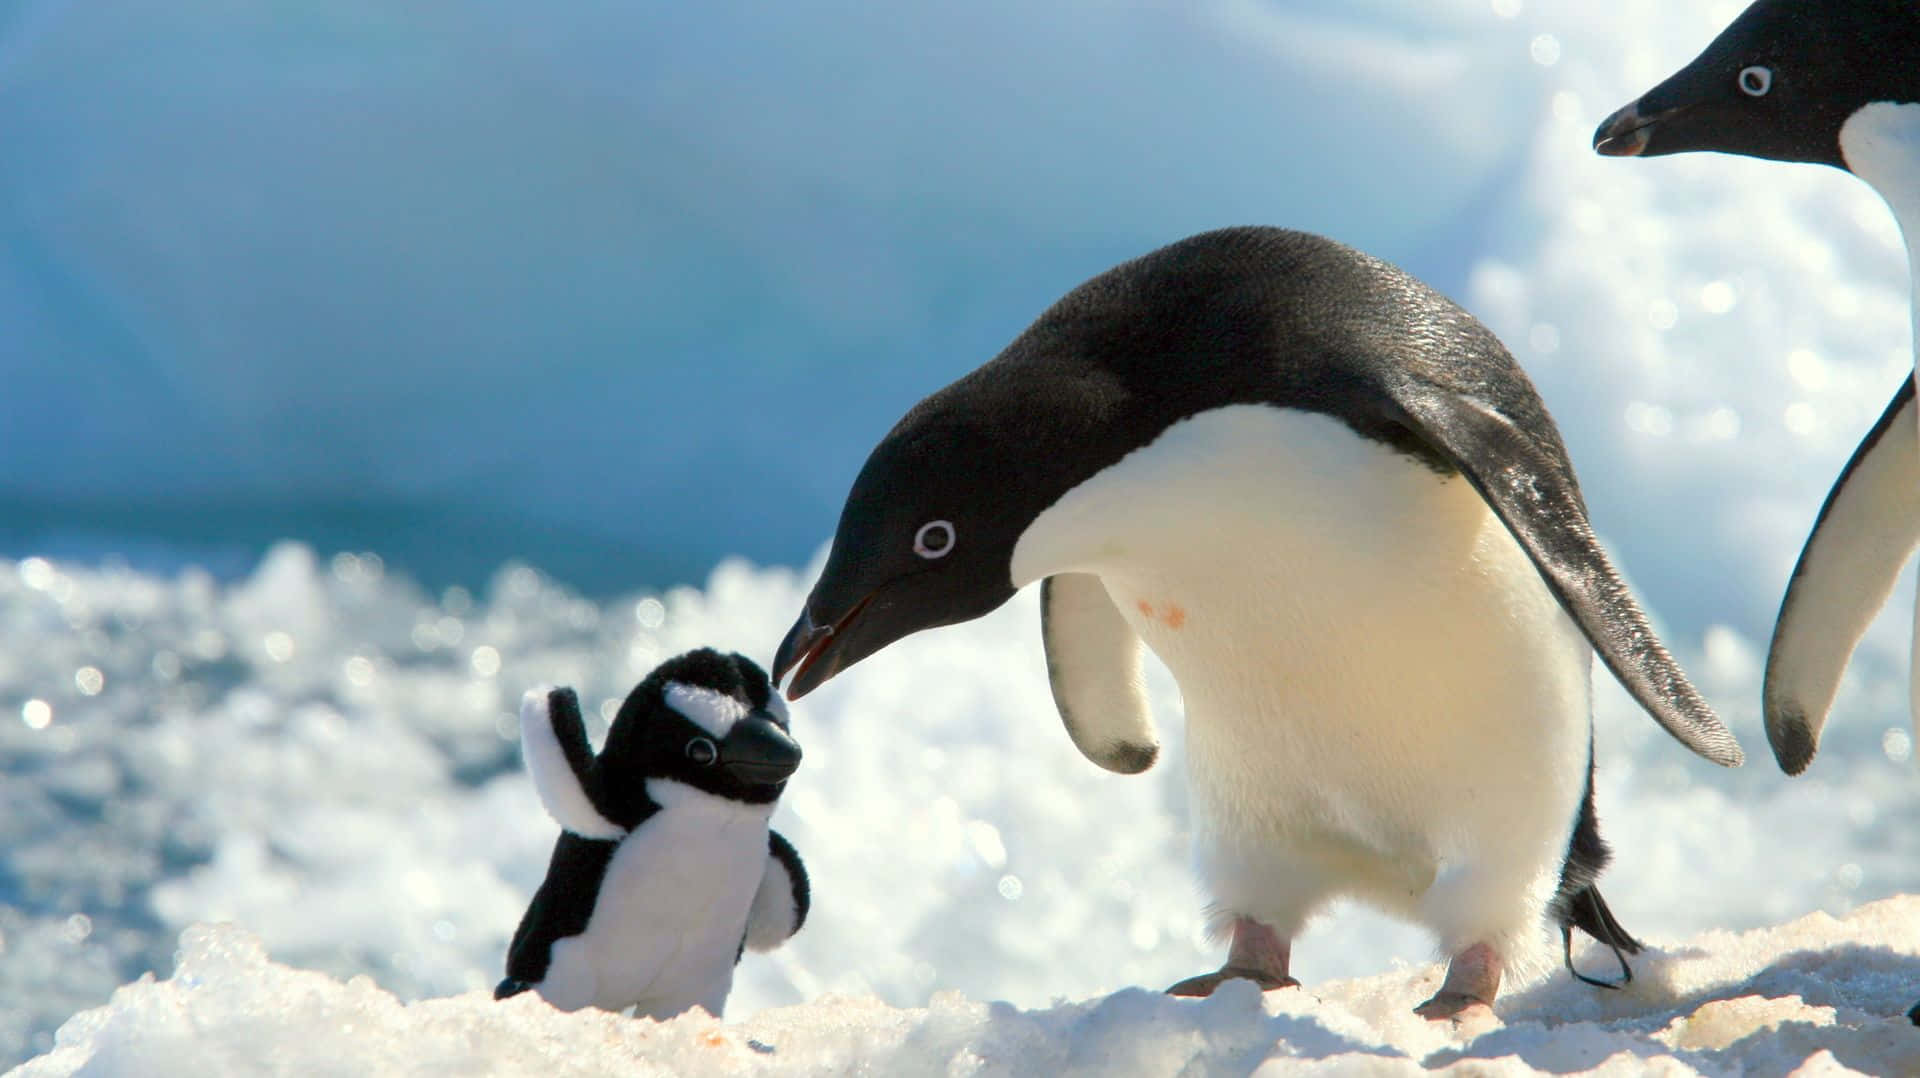 Unafamilia De Pingüinos Disfrutando Del Paisaje Antártico.